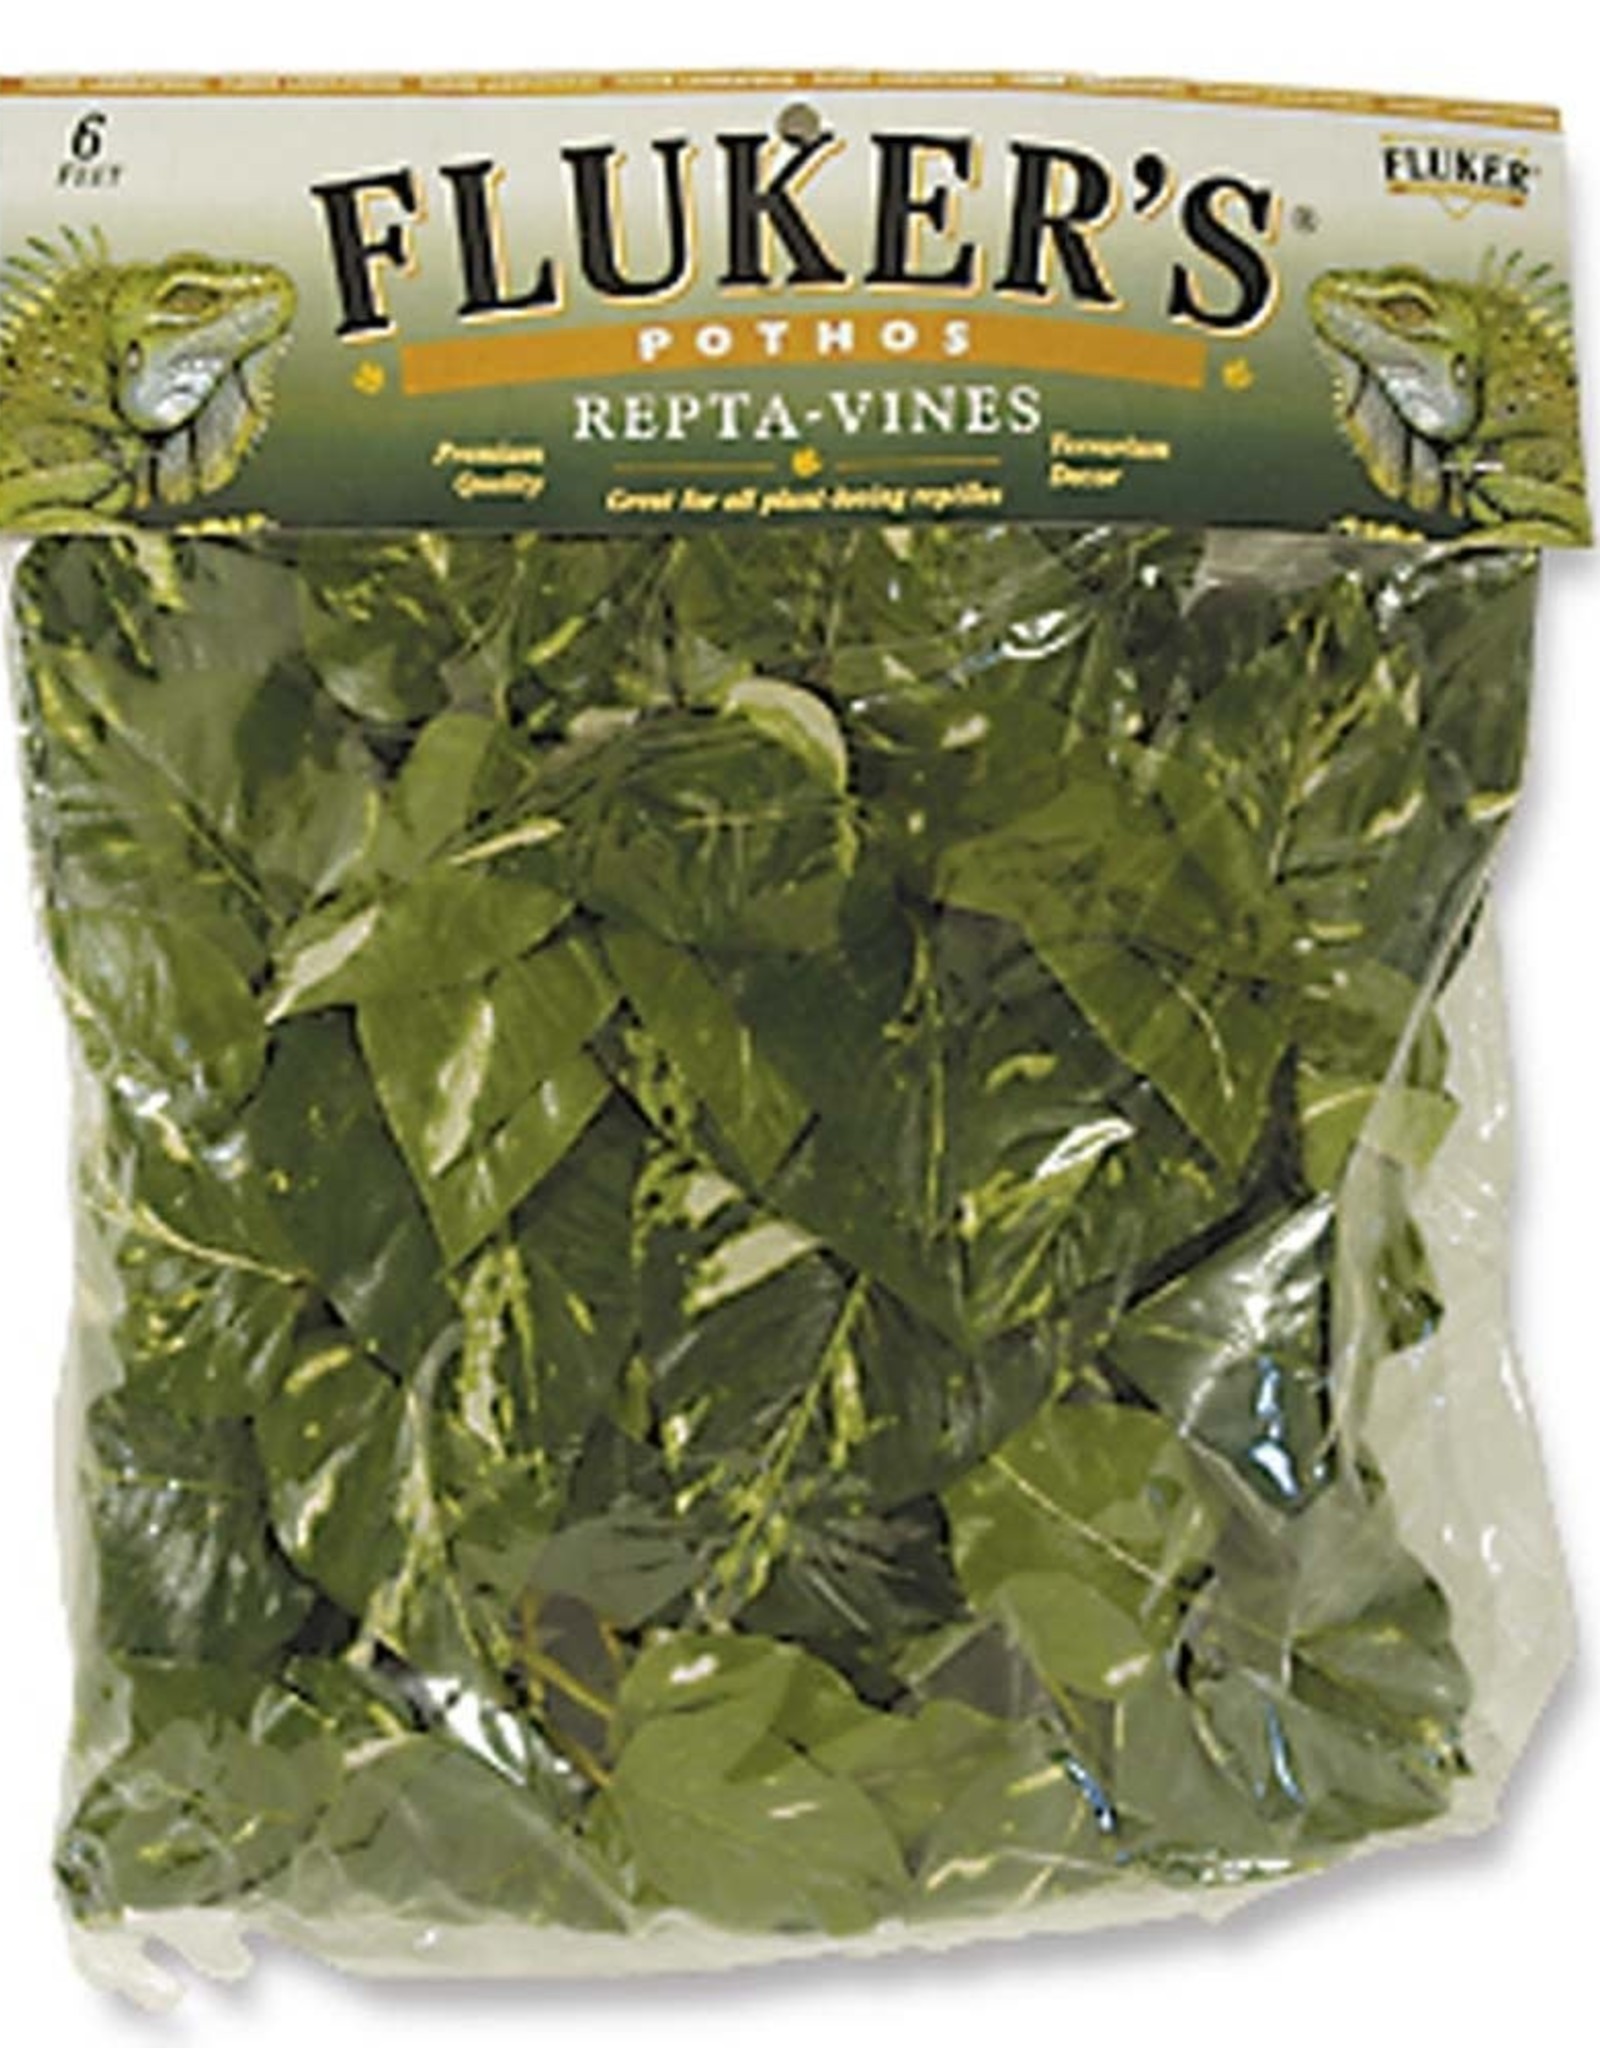 FLUKER'S Fluker's Repta-Vines Pothos 6ft